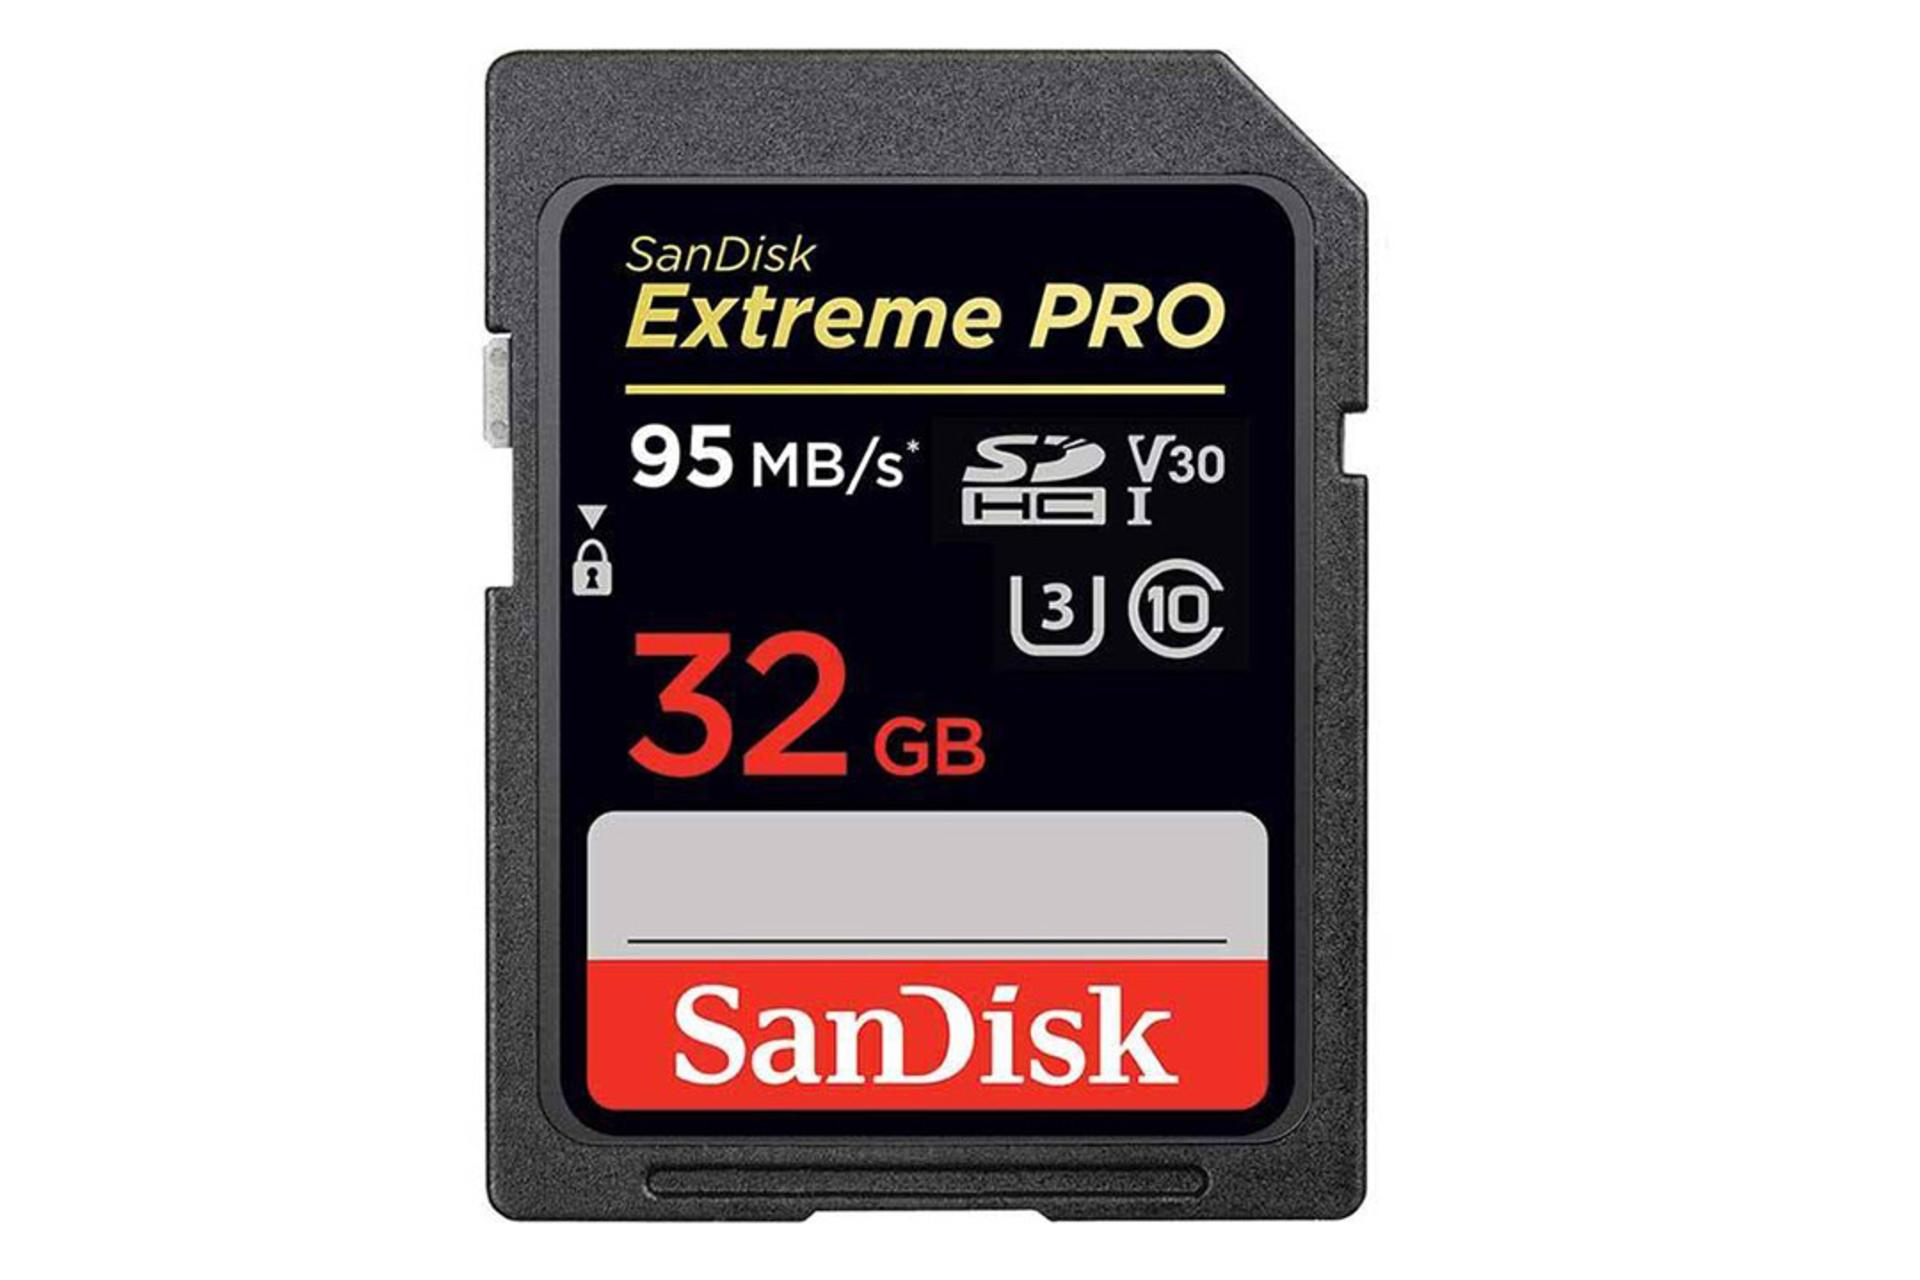 SanDisk Extreme Pro V30 microSDHC Class 10 UHS-I U3 32GB